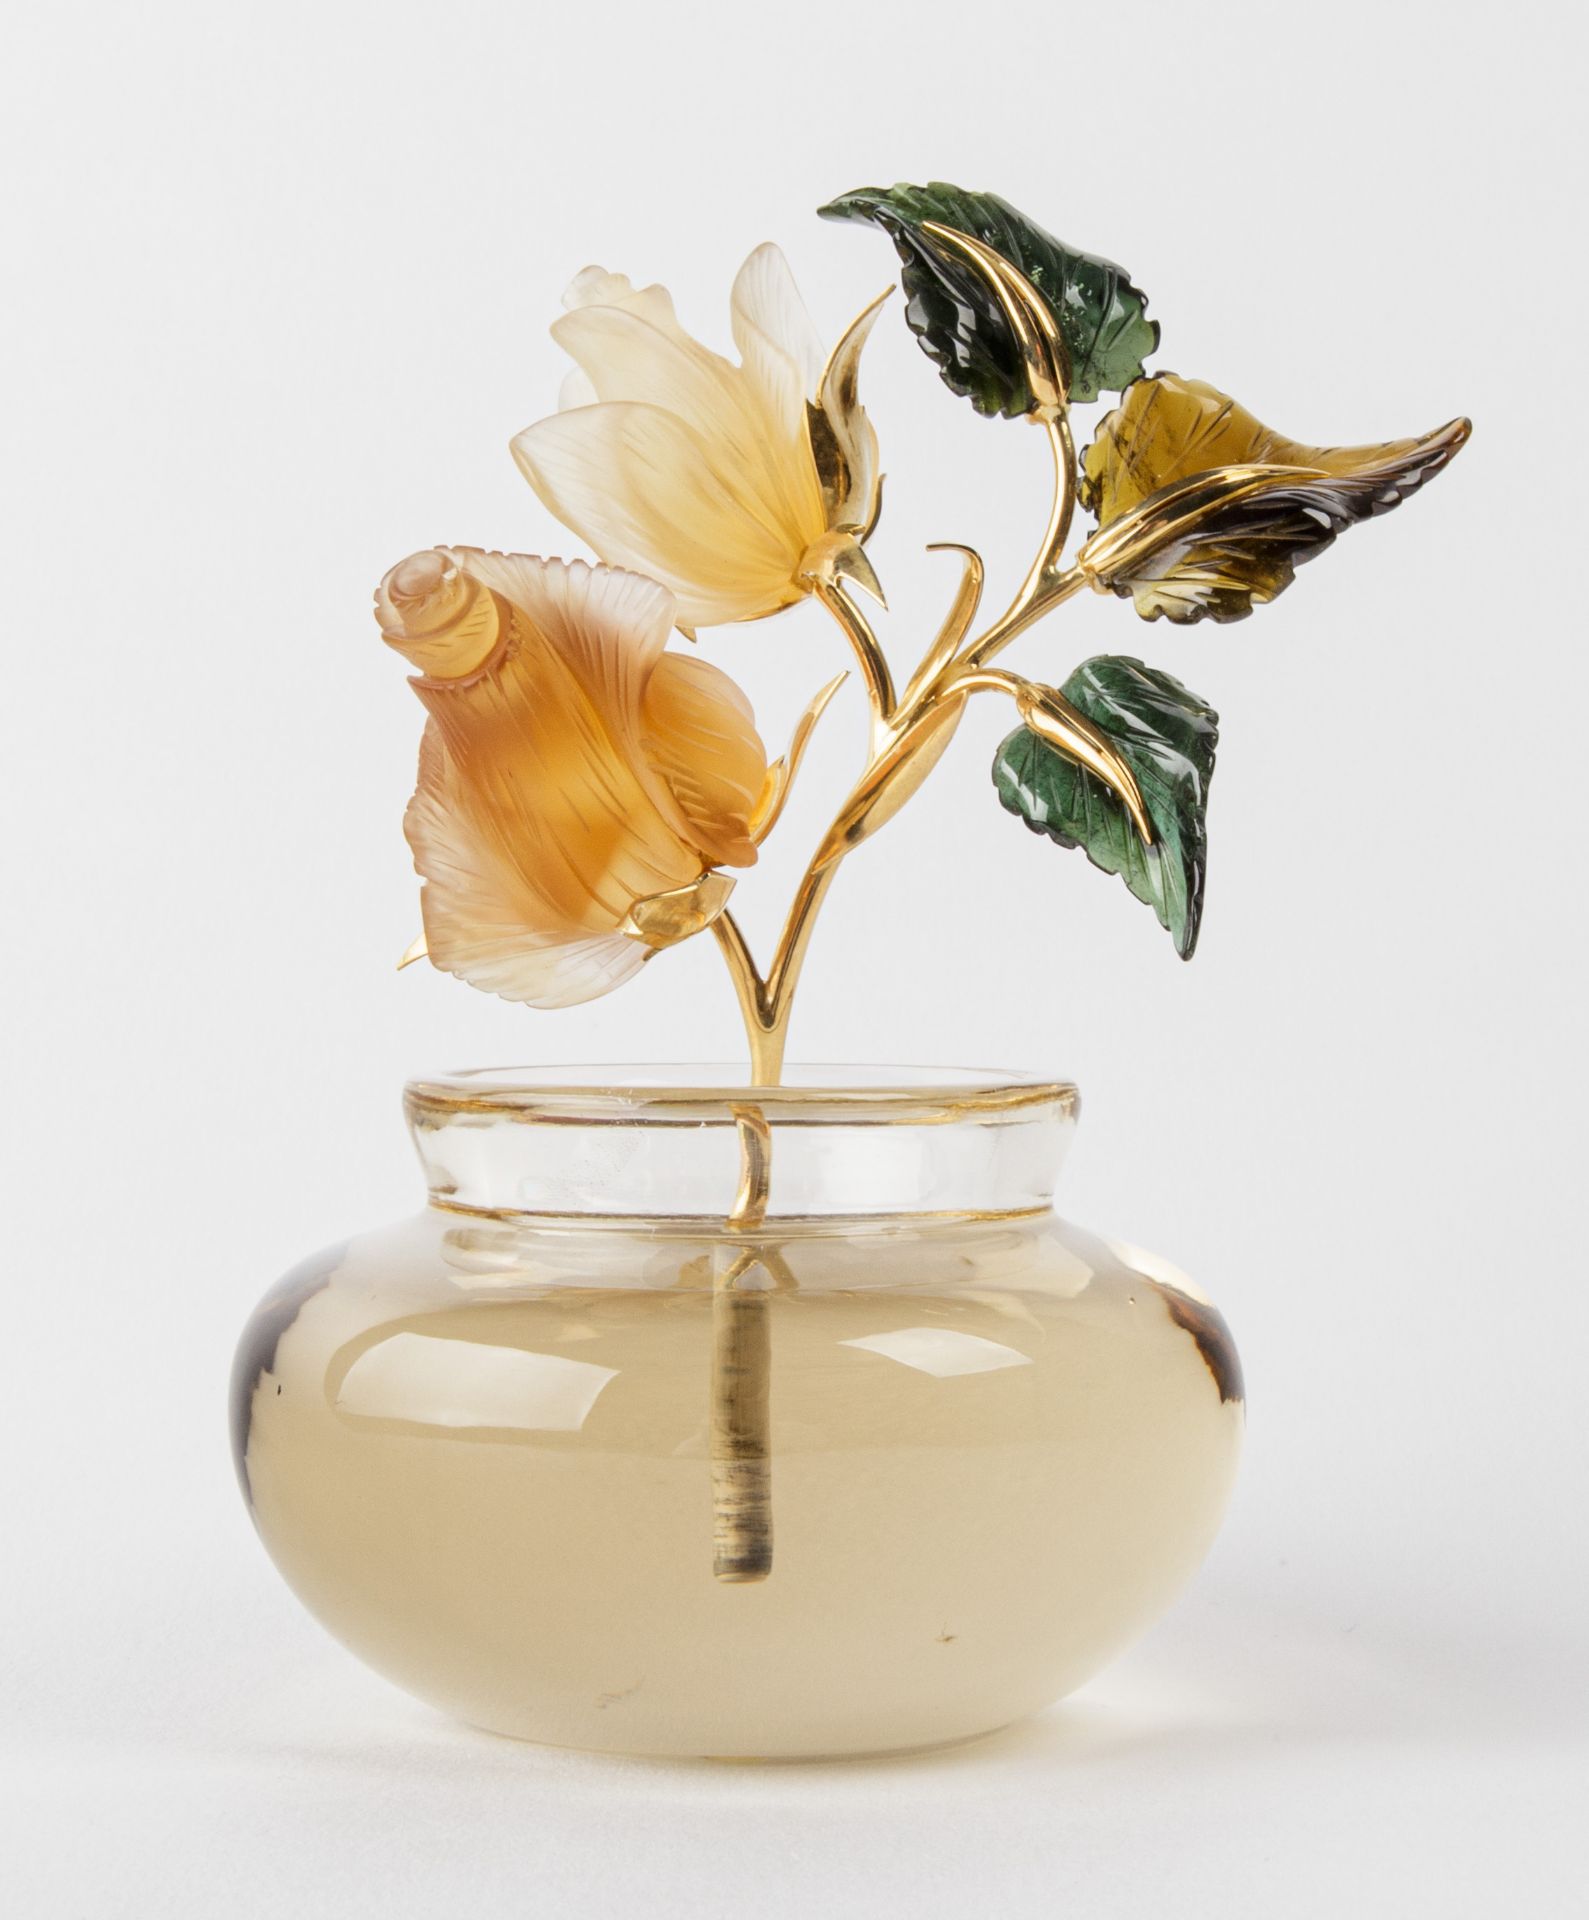 Vase mit zwei gelben Rosen - Kreation von Manfred Wild